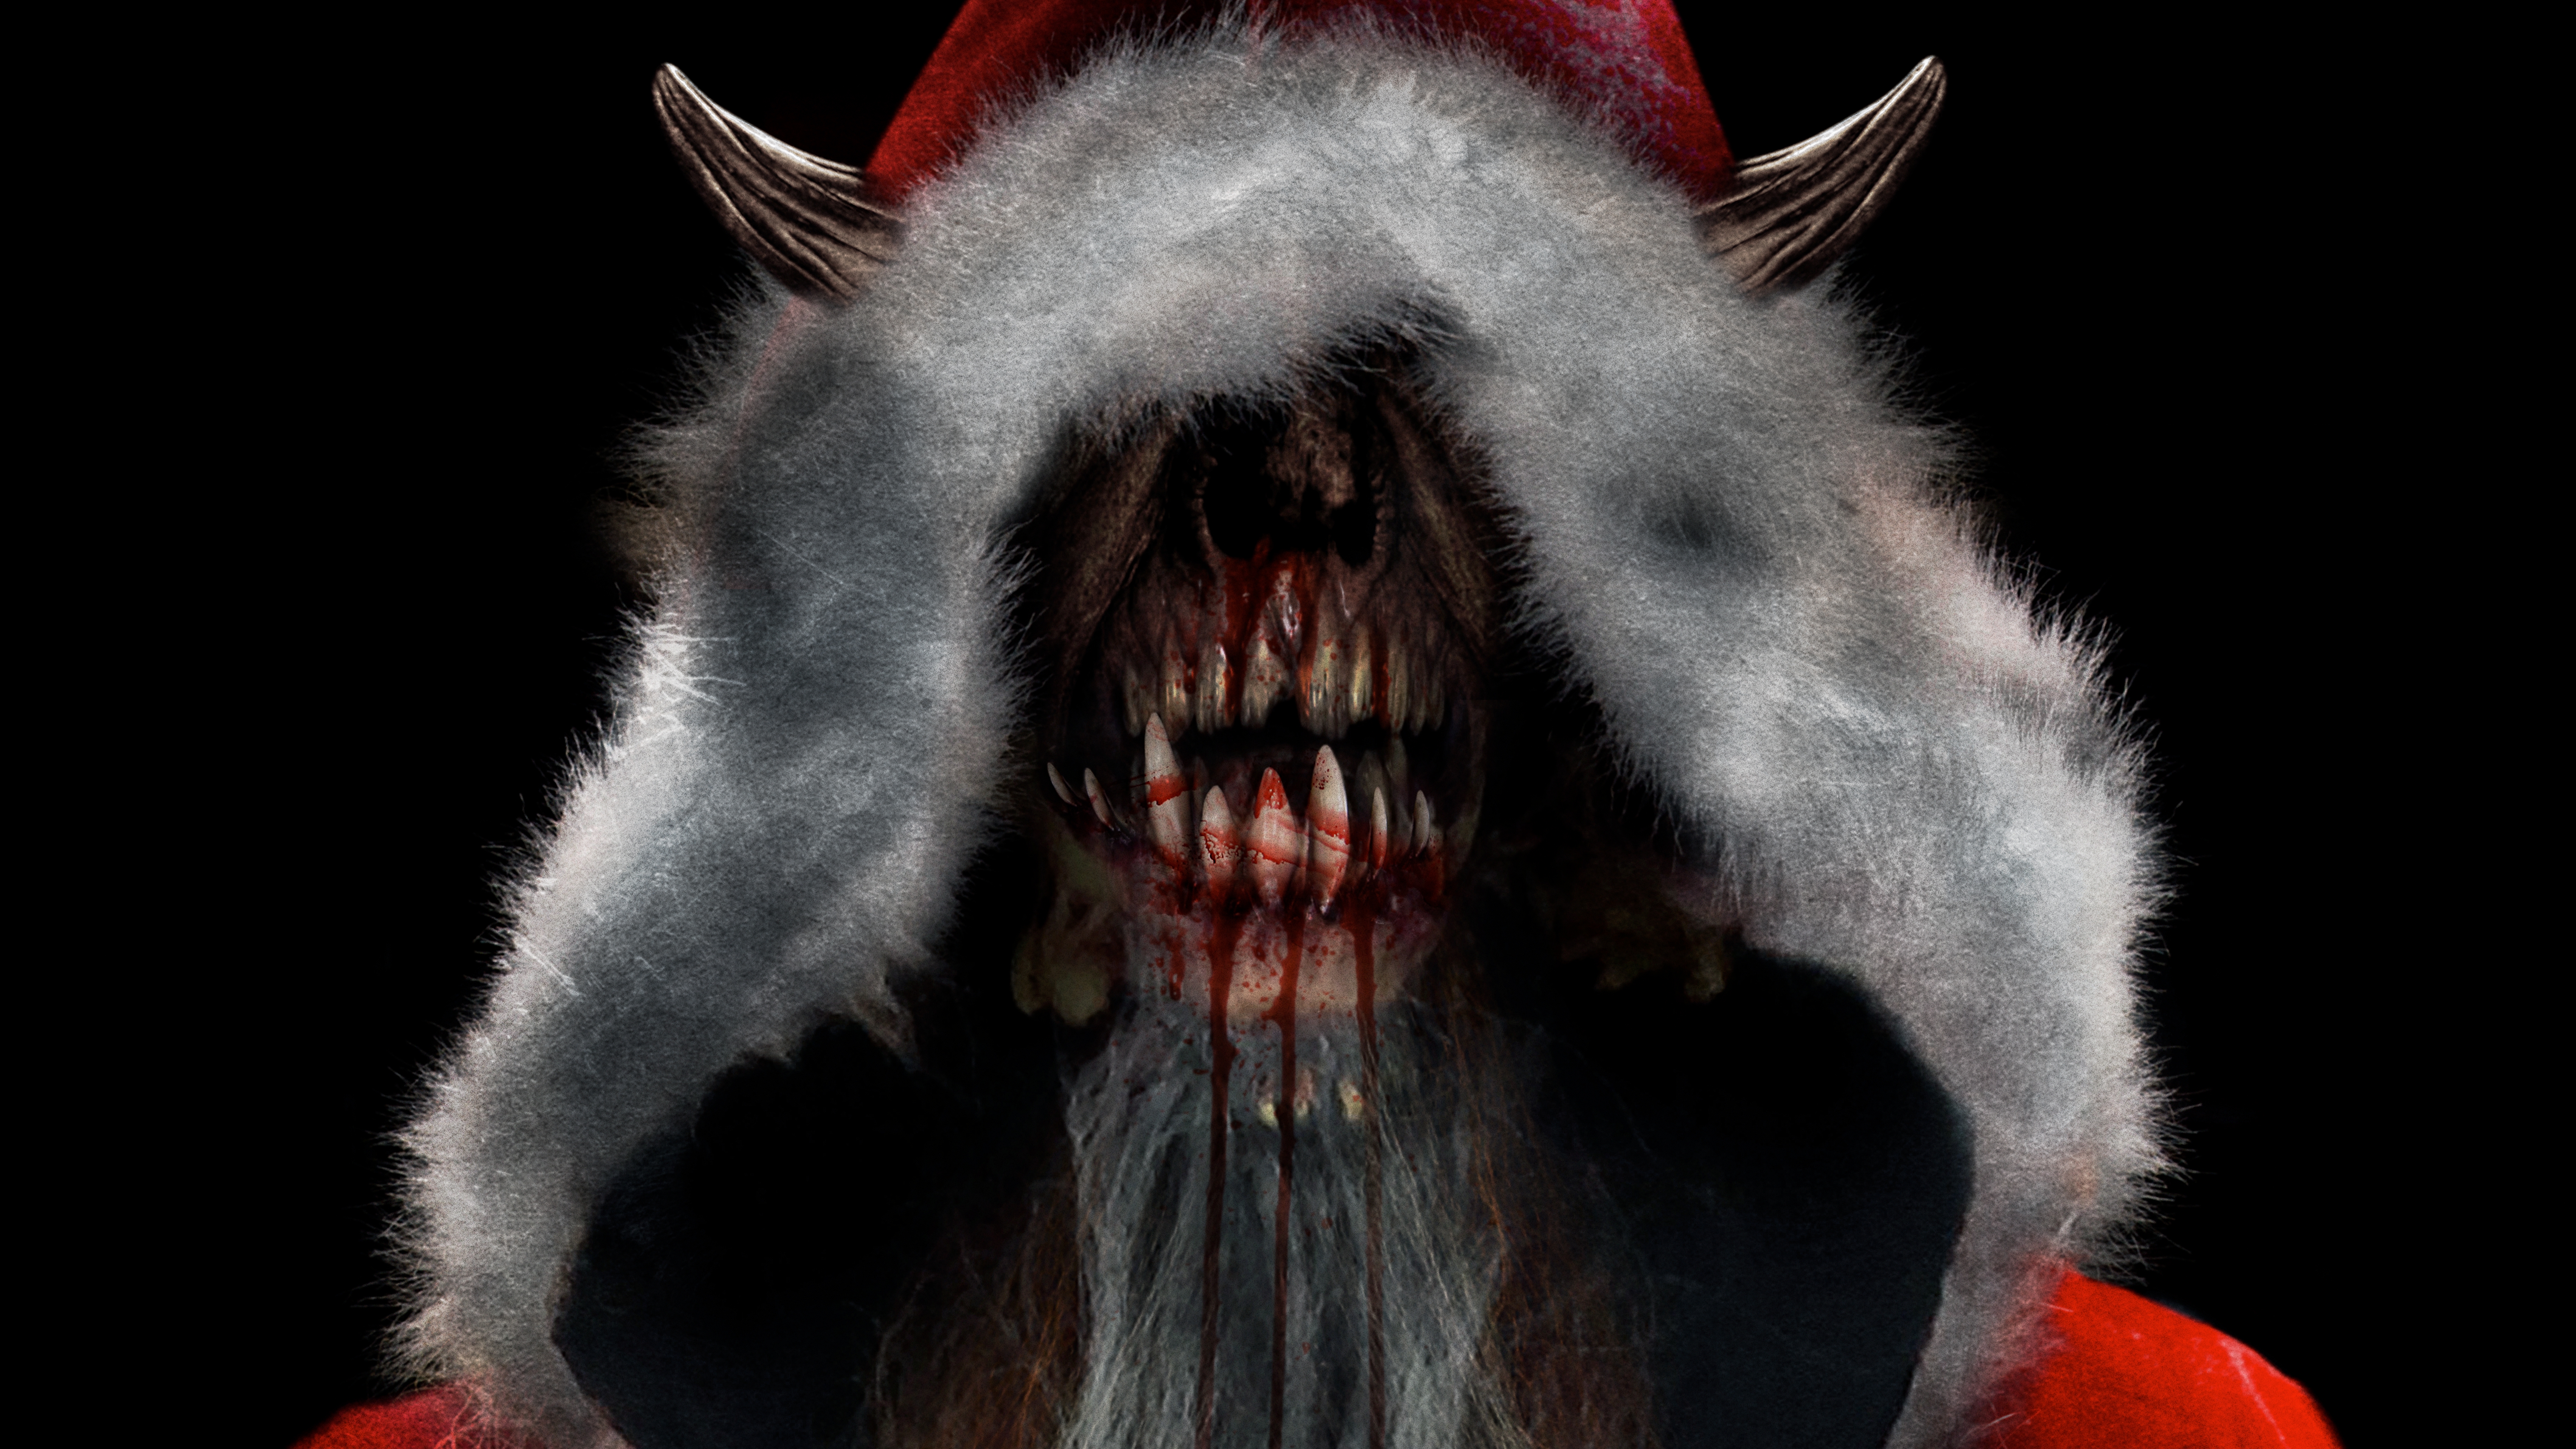 krampus wallpaper,fang,snout,fictional character,demon,werewolf